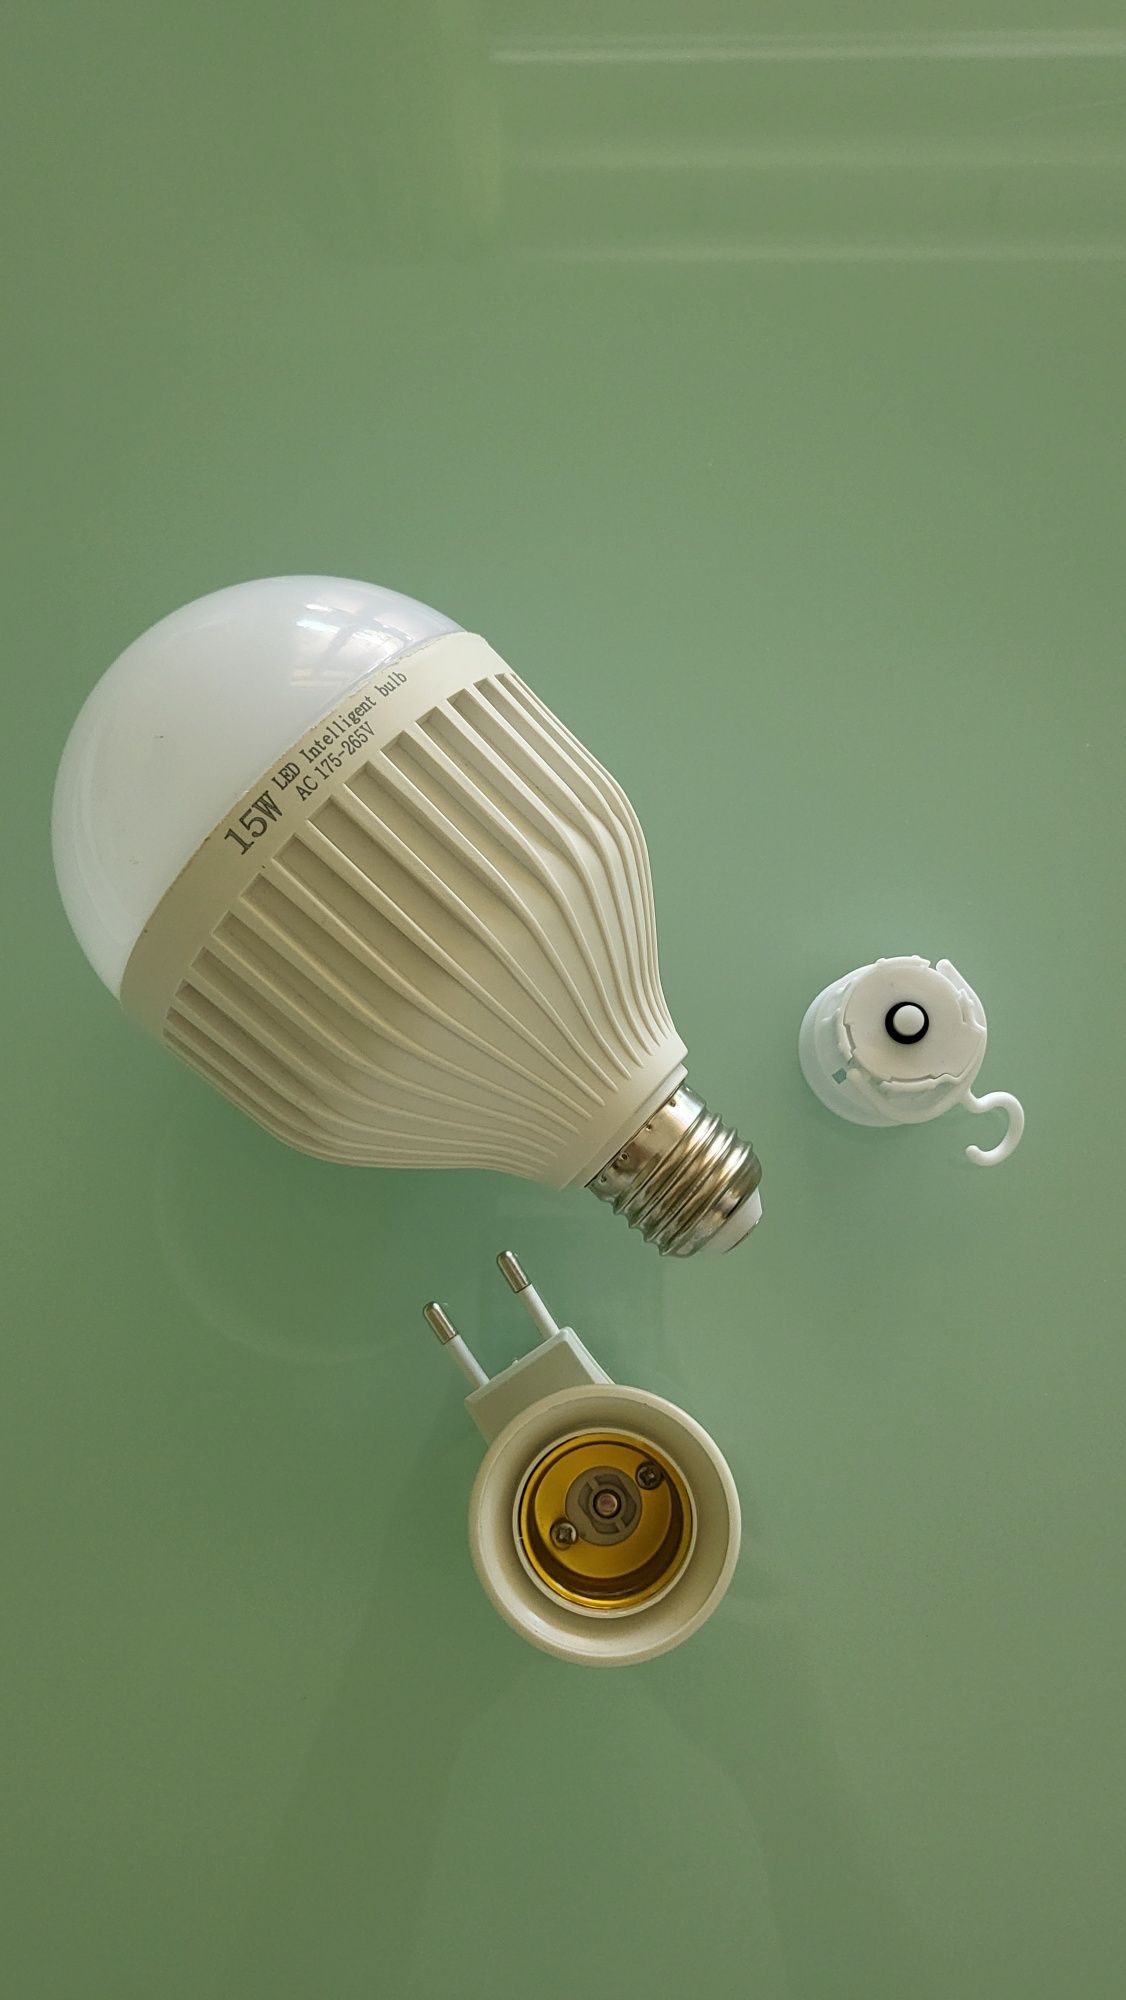 Аккумуляторная лампочка до 4 ч, цоколь Е27, аварийная лампа, LED, лед